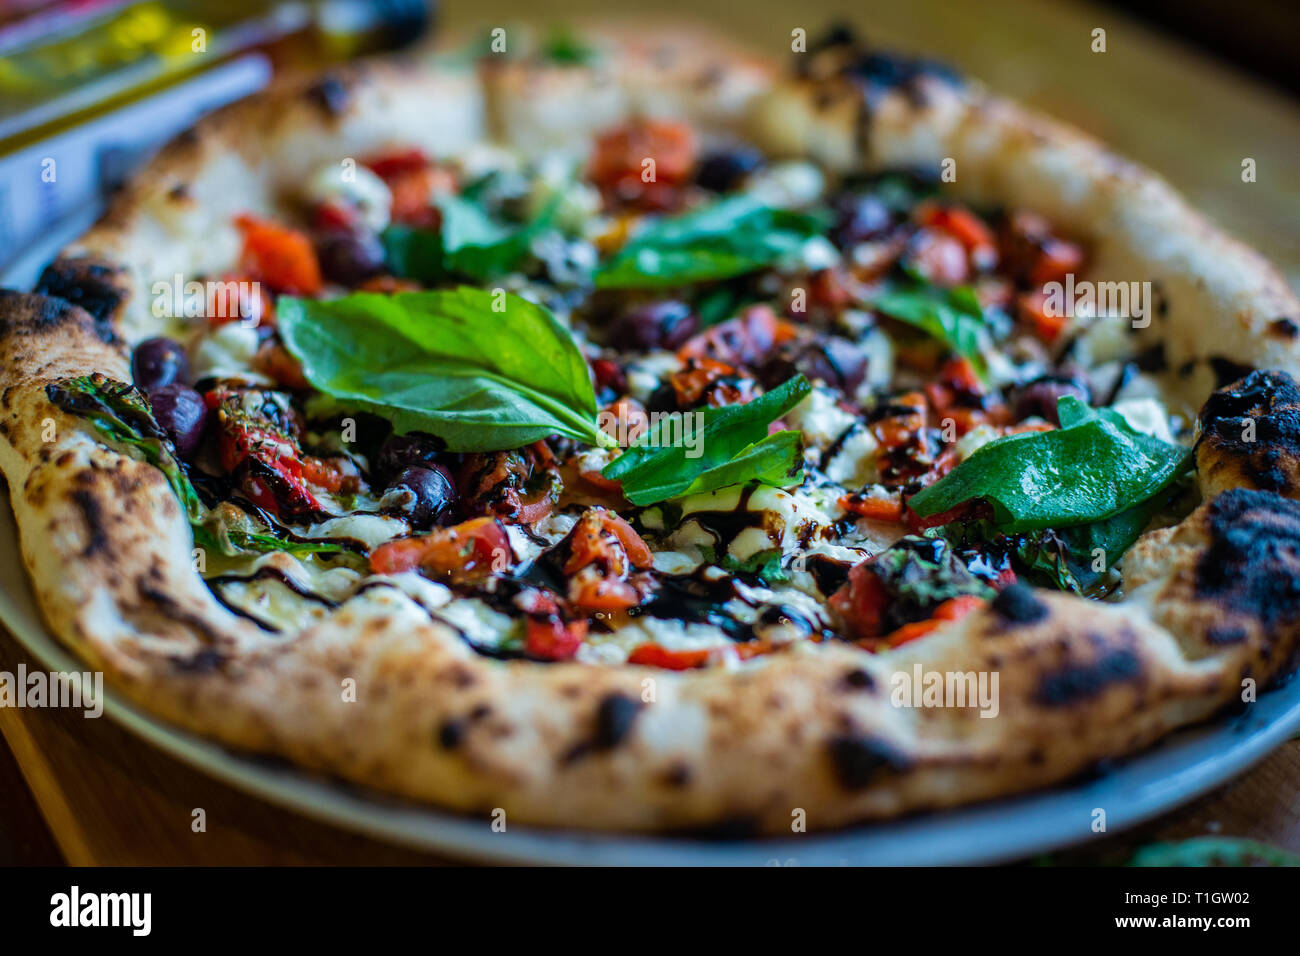 Italiano autentico stile napoletano pizza al forno a legna sul tavolo in una pizzeria ristorante trattoria Foto Stock